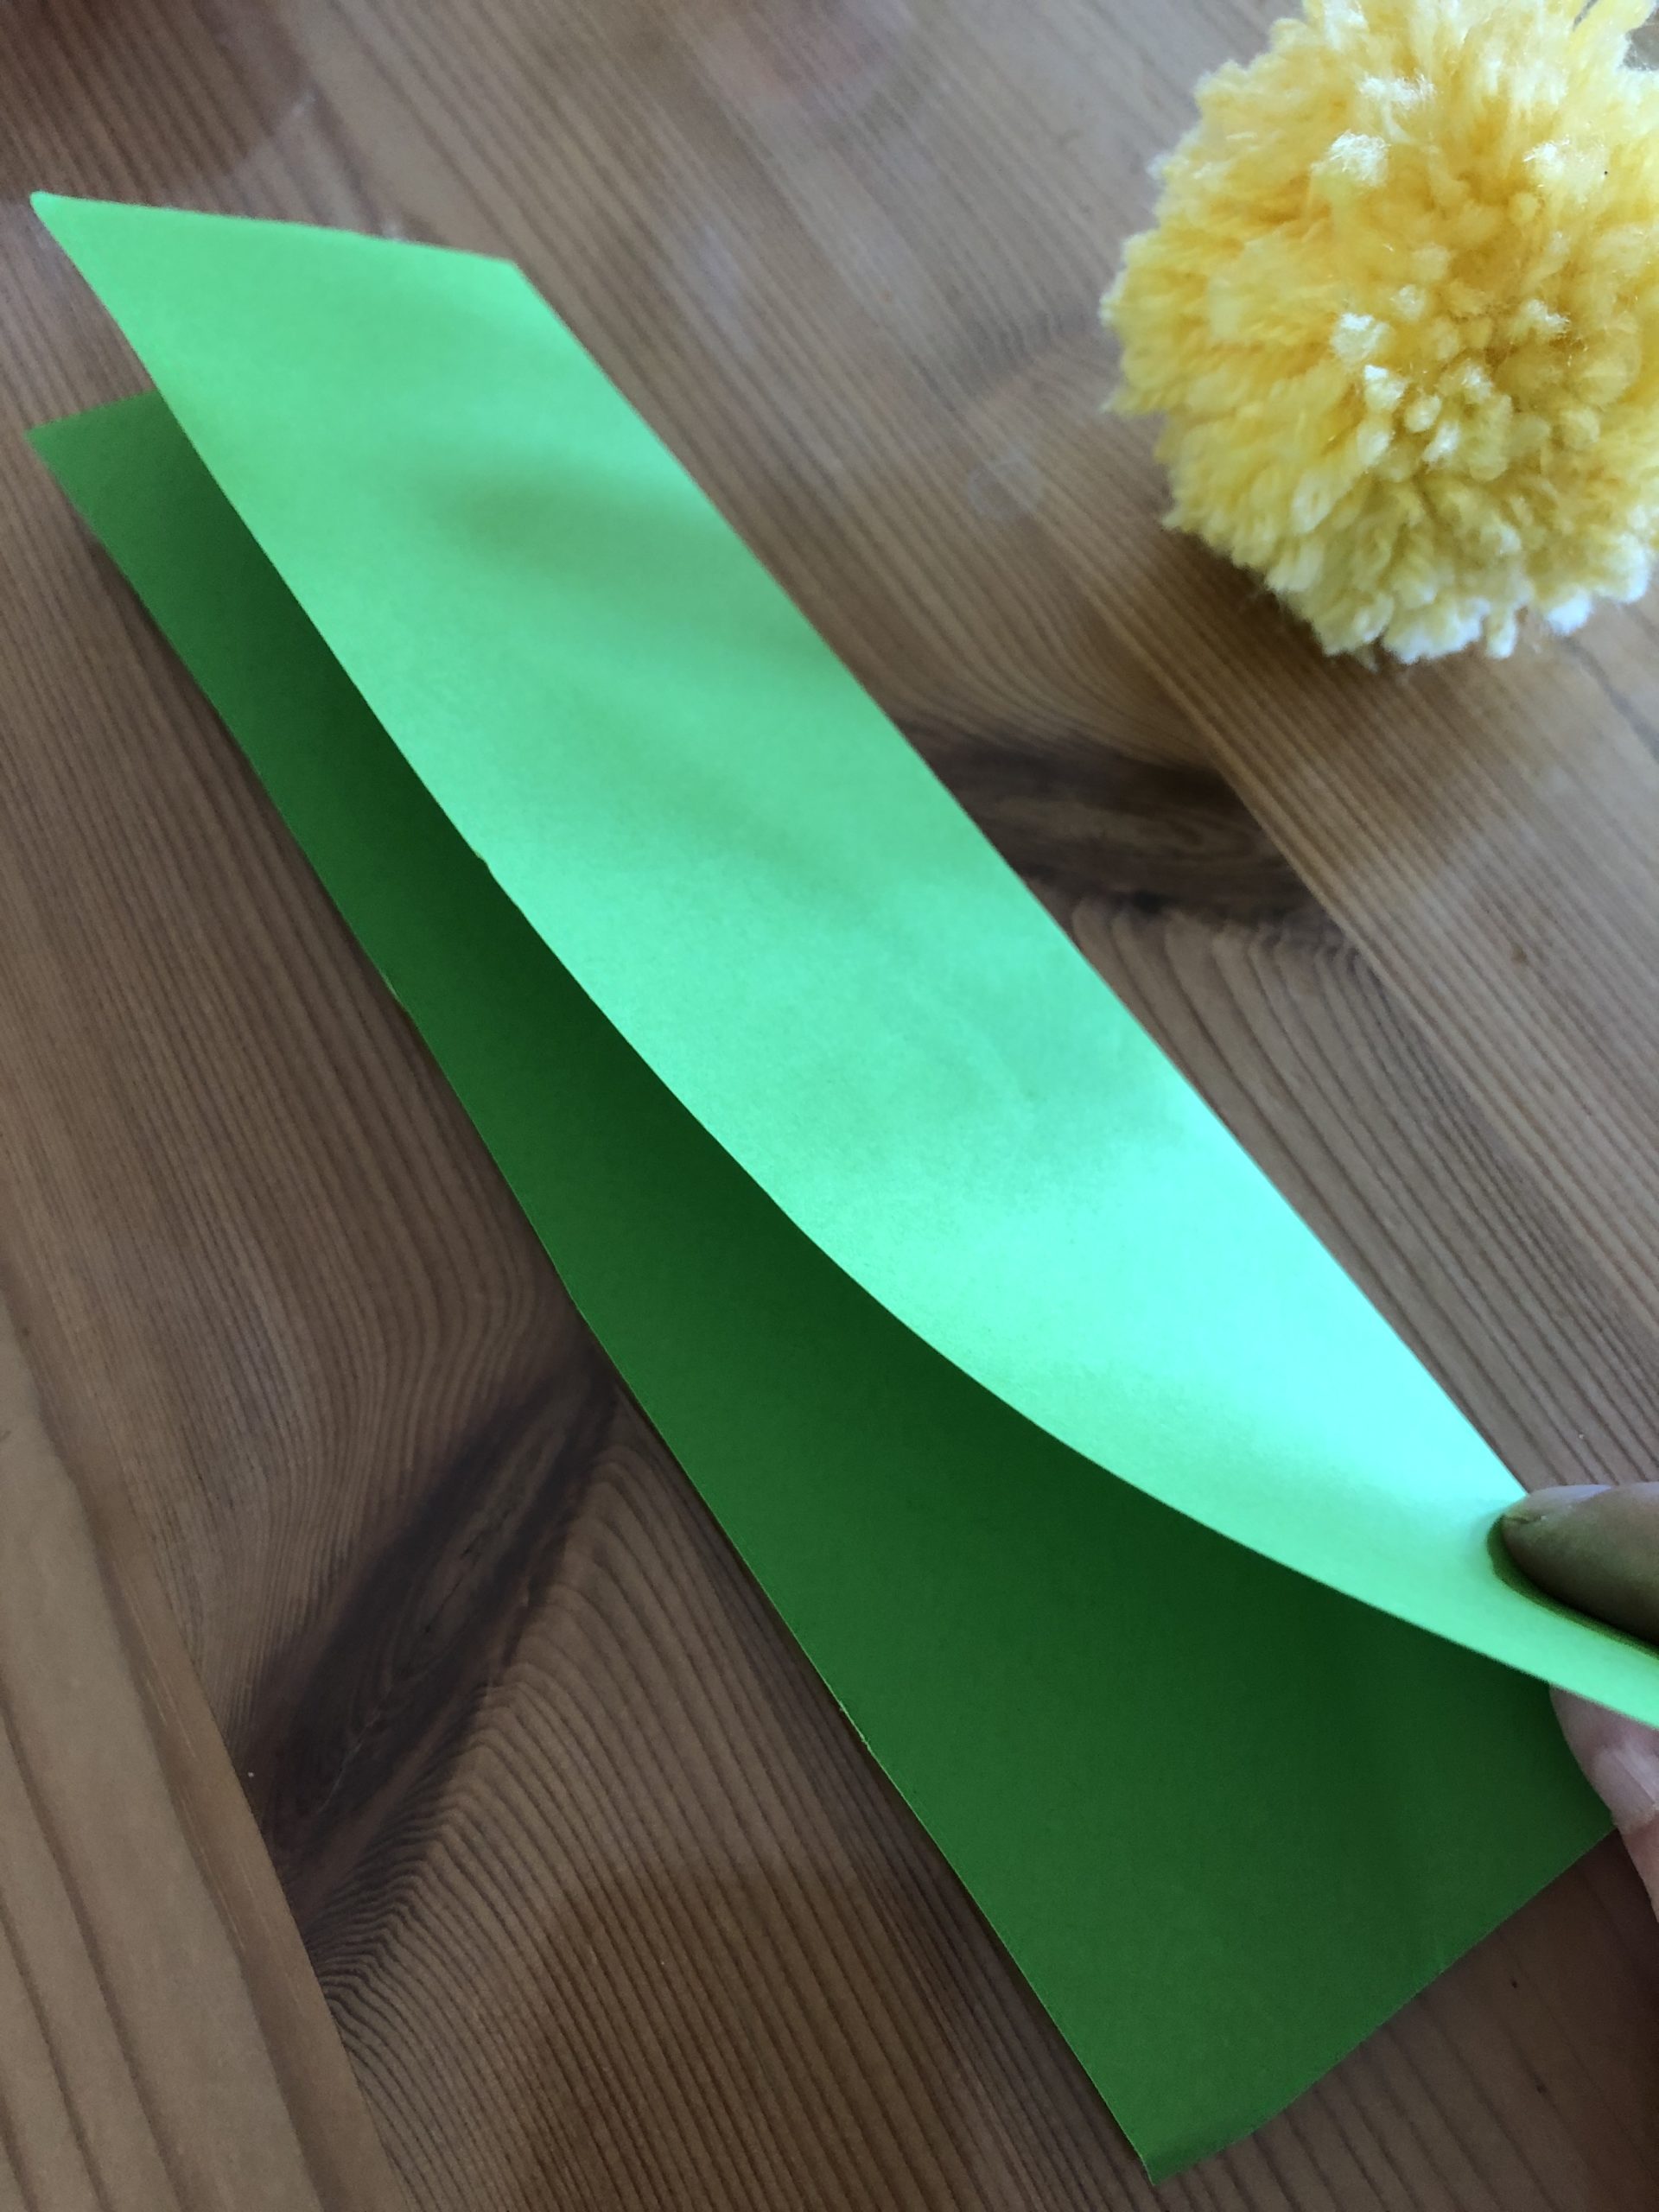 Bild zum Schritt 2 für das Bastel- und DIY-Abenteuer für Kinder: 'Grünes Papier halbieren damit ein 5 cm breiter Streifen entsteht....'